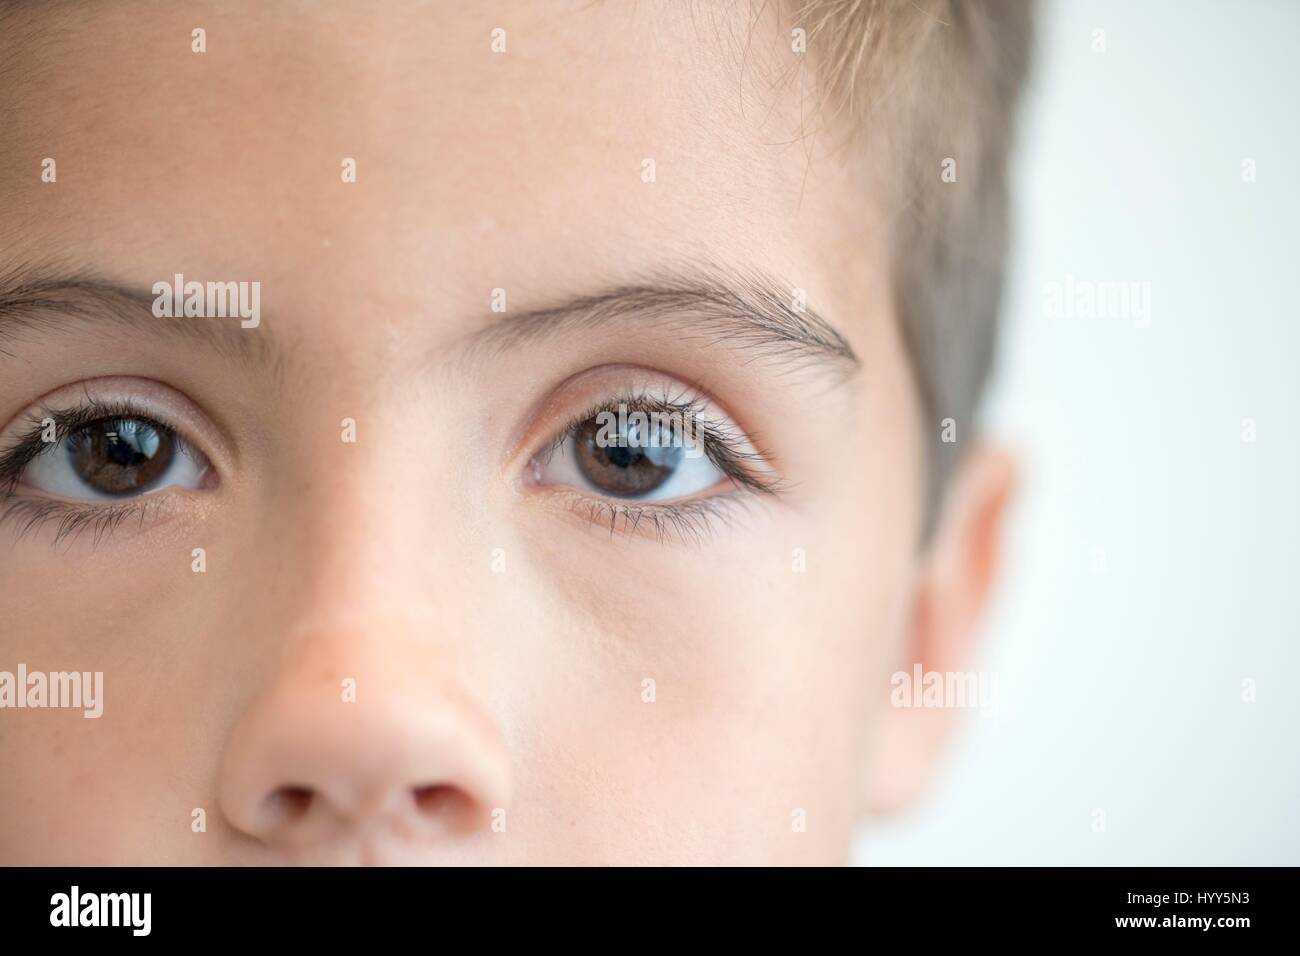 Ragazzo con occhi marroni, close up ritratto. Foto Stock